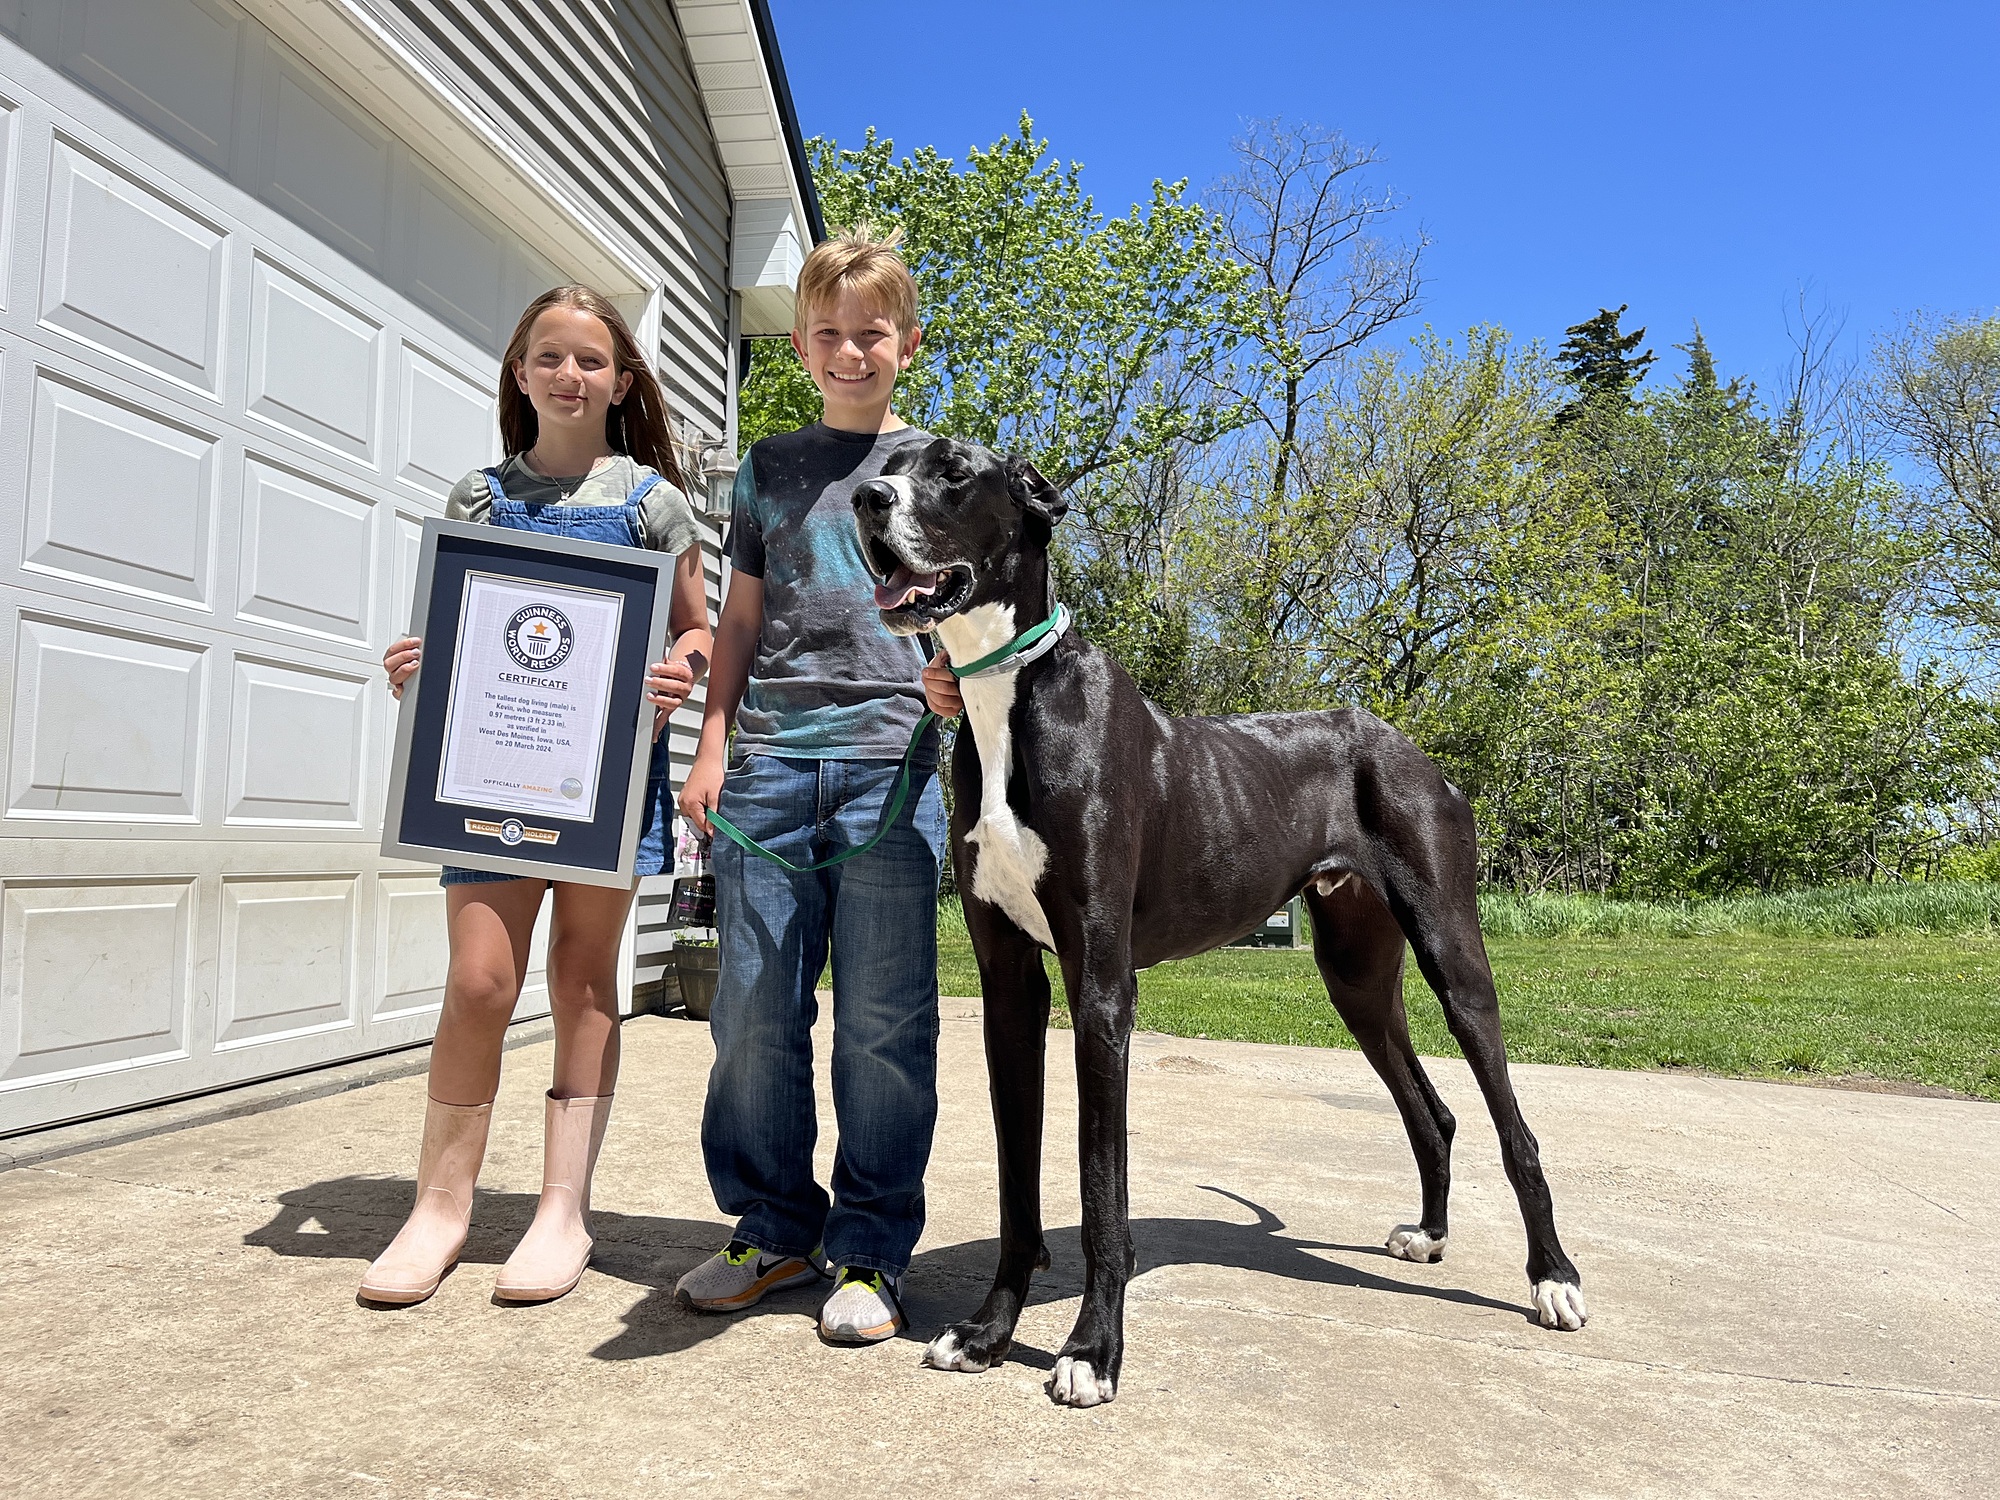 Chó Kevin nhận chứng nhận Kỷ lục Guinness hồi tháng 3. Ảnh: Guiness